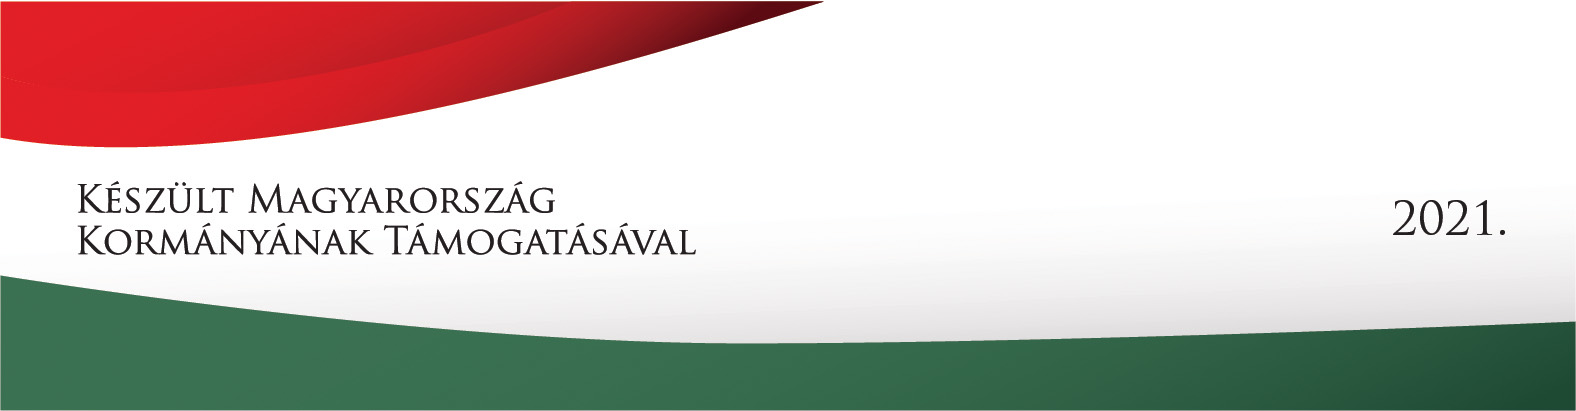 Készült Magyarország Kormányának Támogatásával 2021 logó